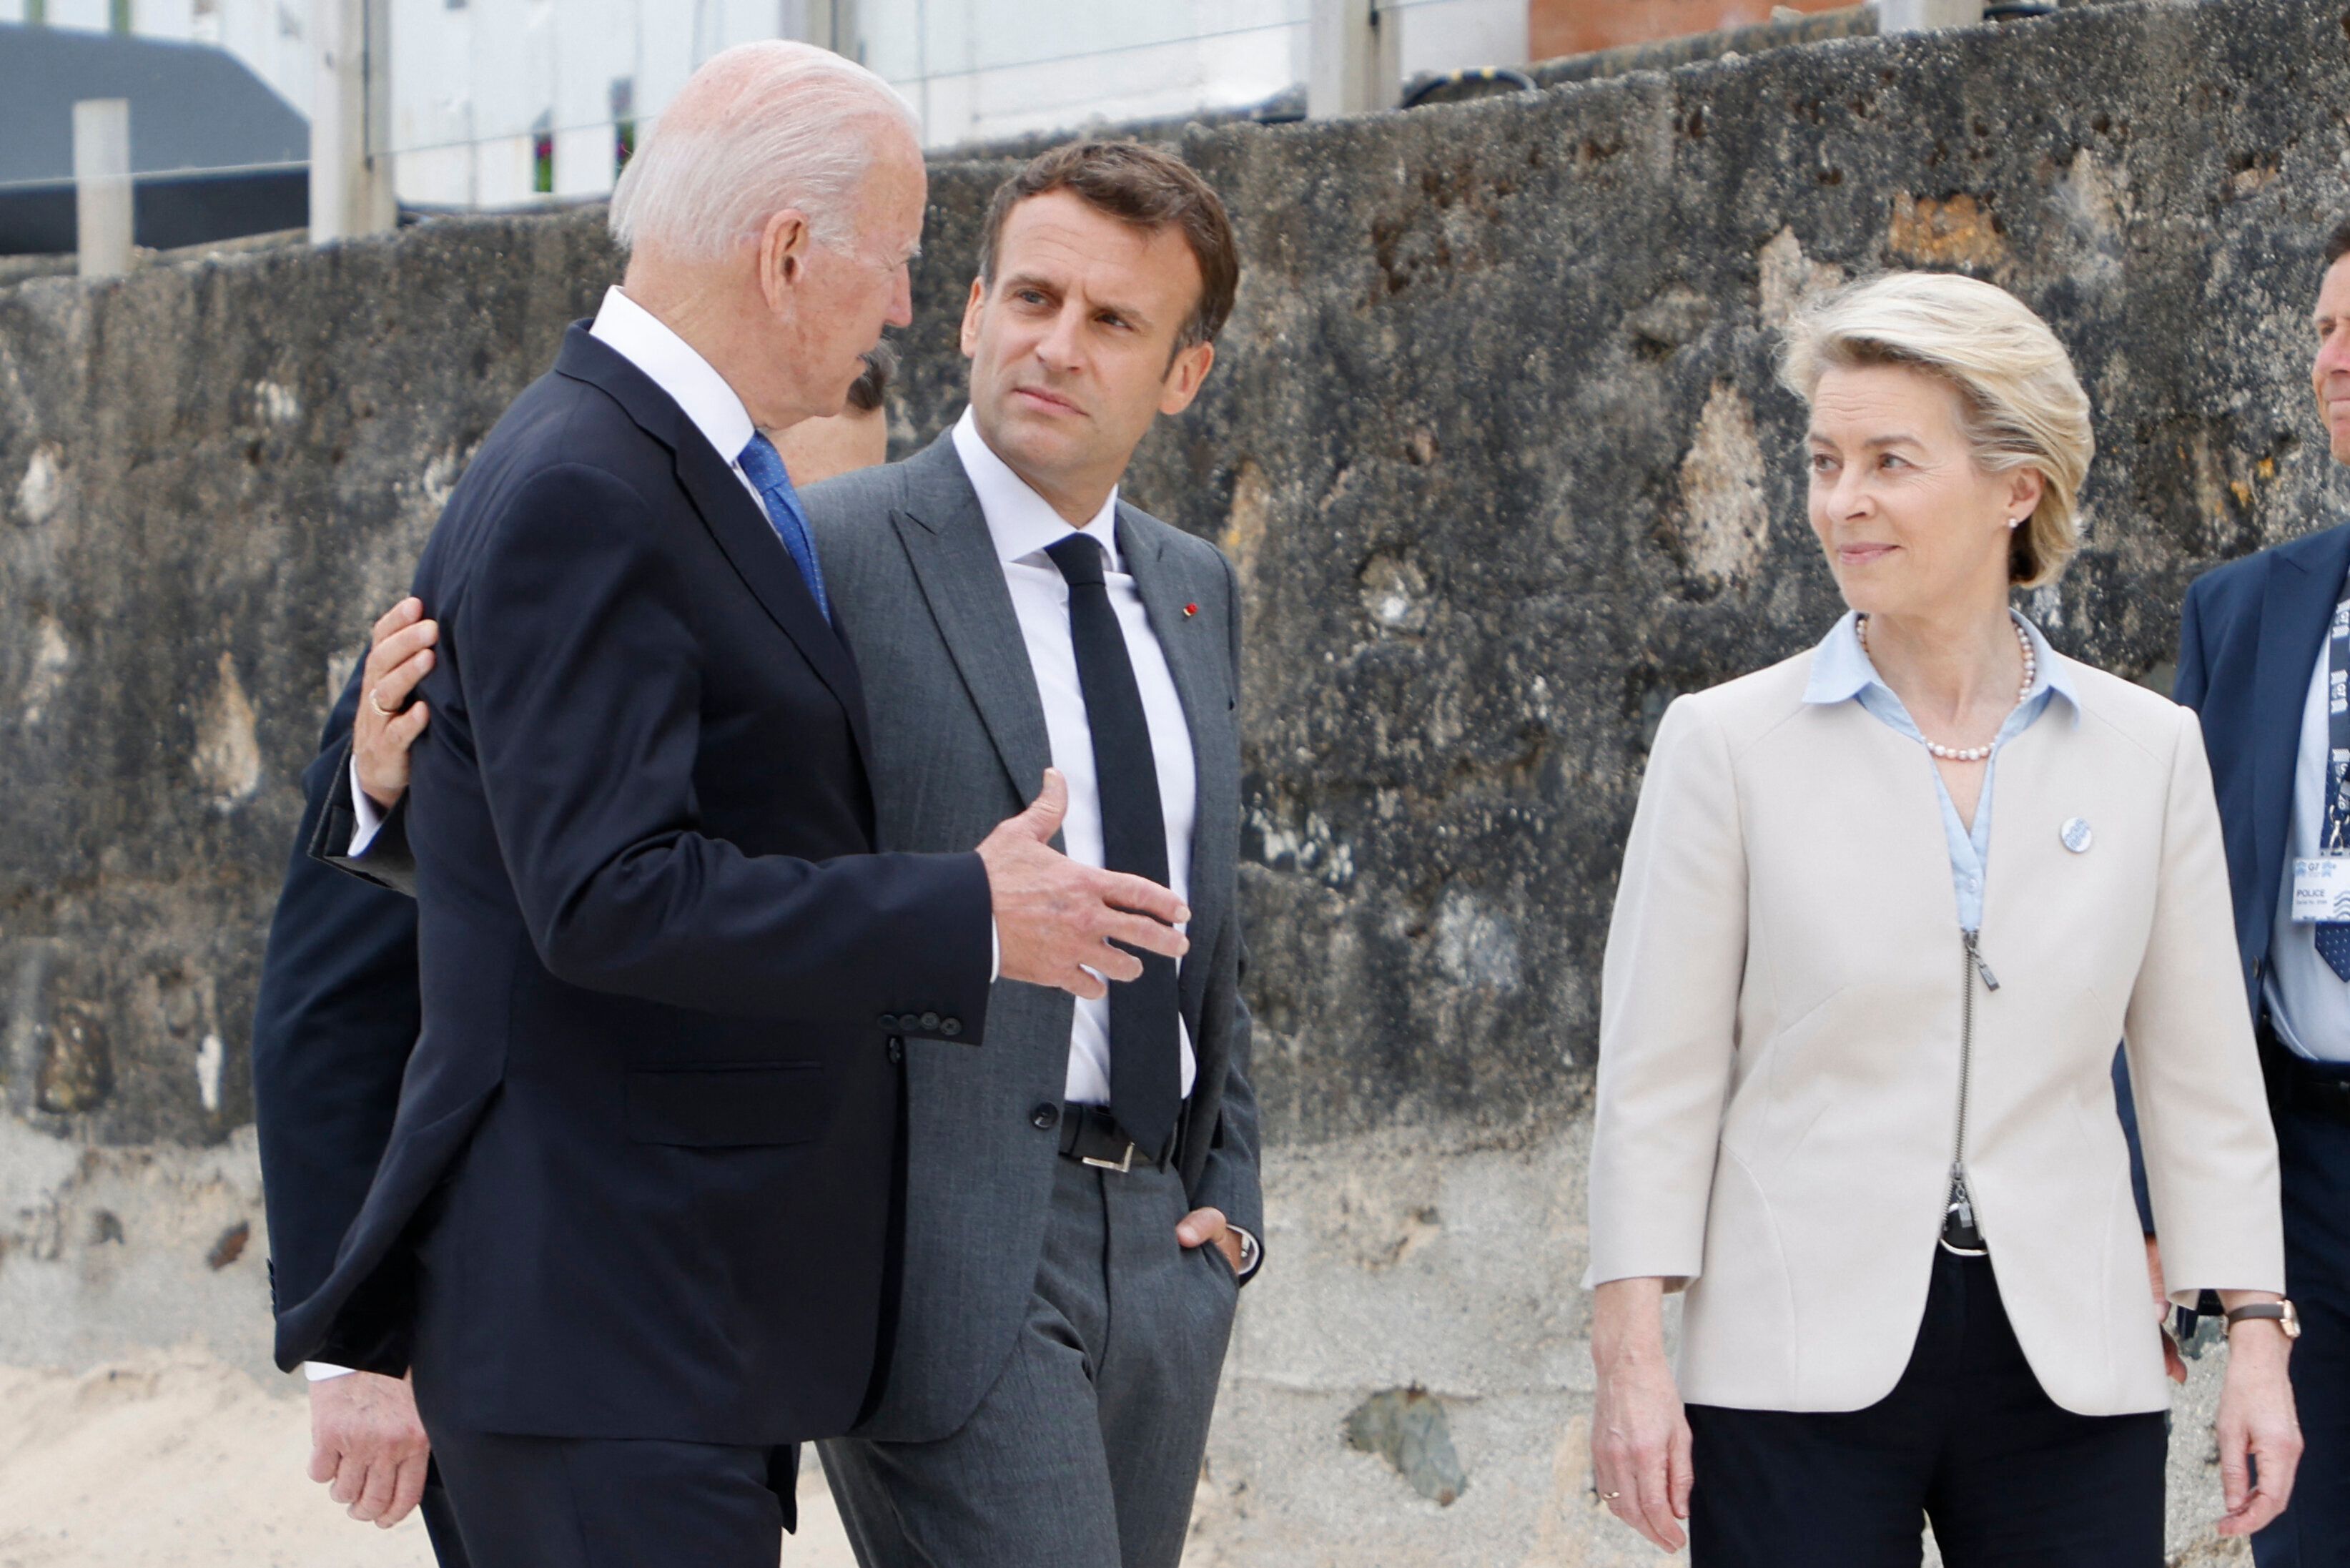 Macron was flanked by European Commission president Ursula von der